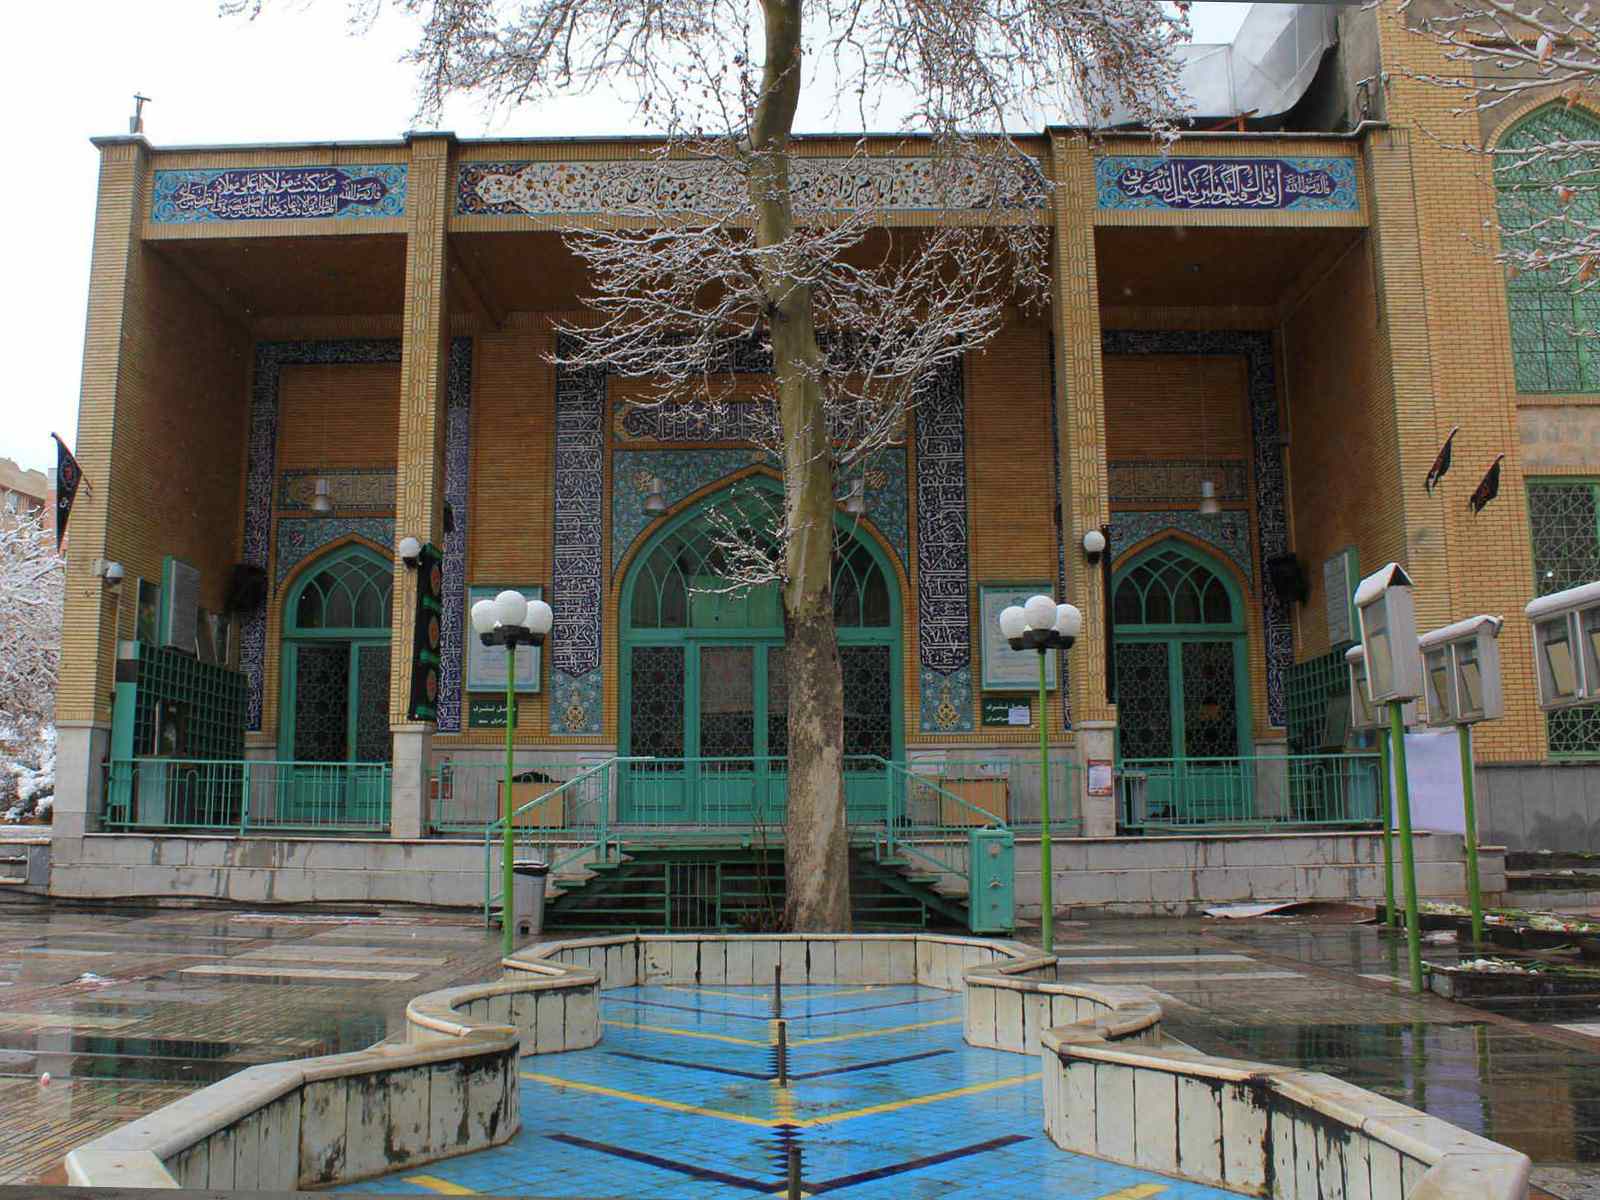 الإمام زاده جعفر و حميد خاتون يقعان في منطقه باغ فیض في طهران